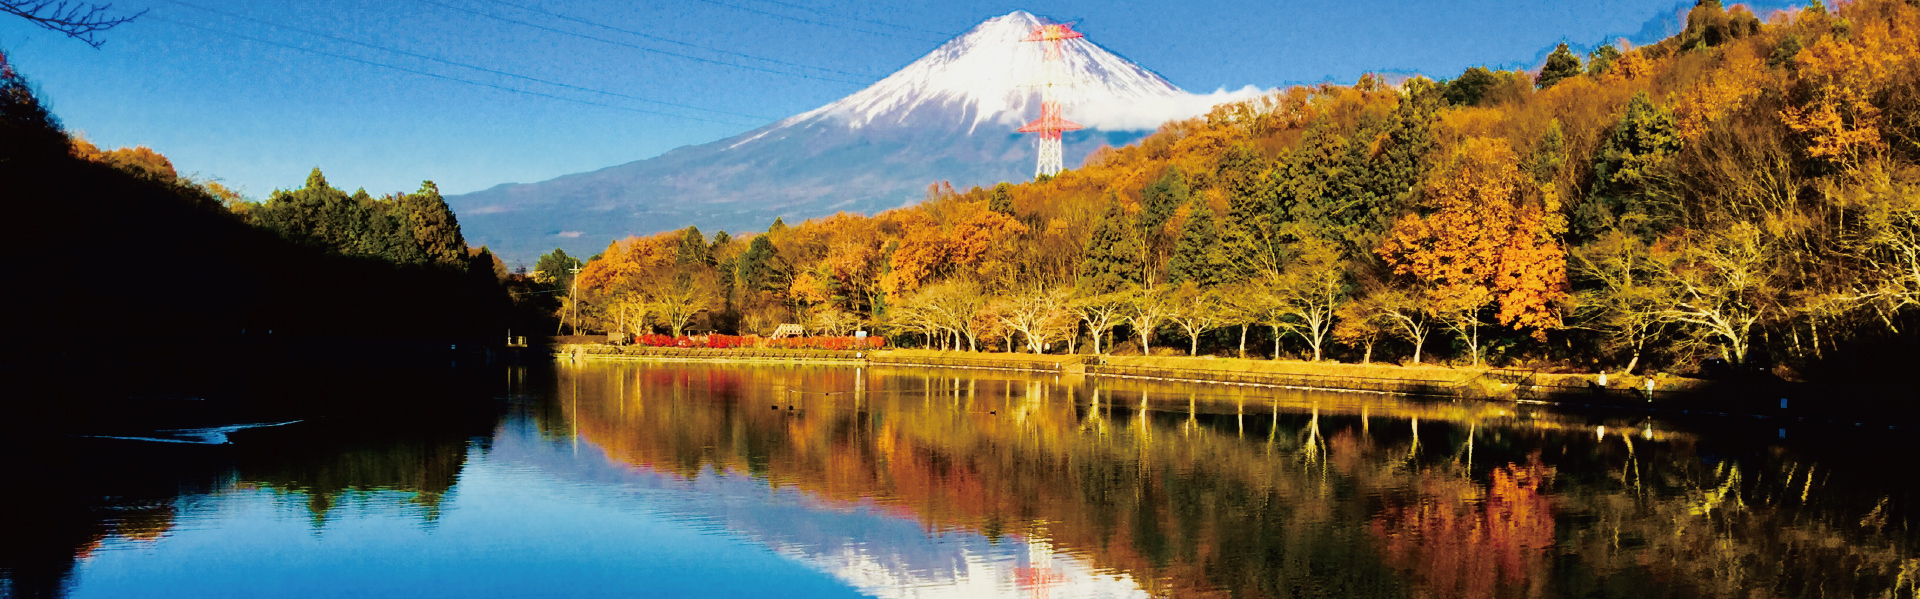 富士山が望める高台にある青木平